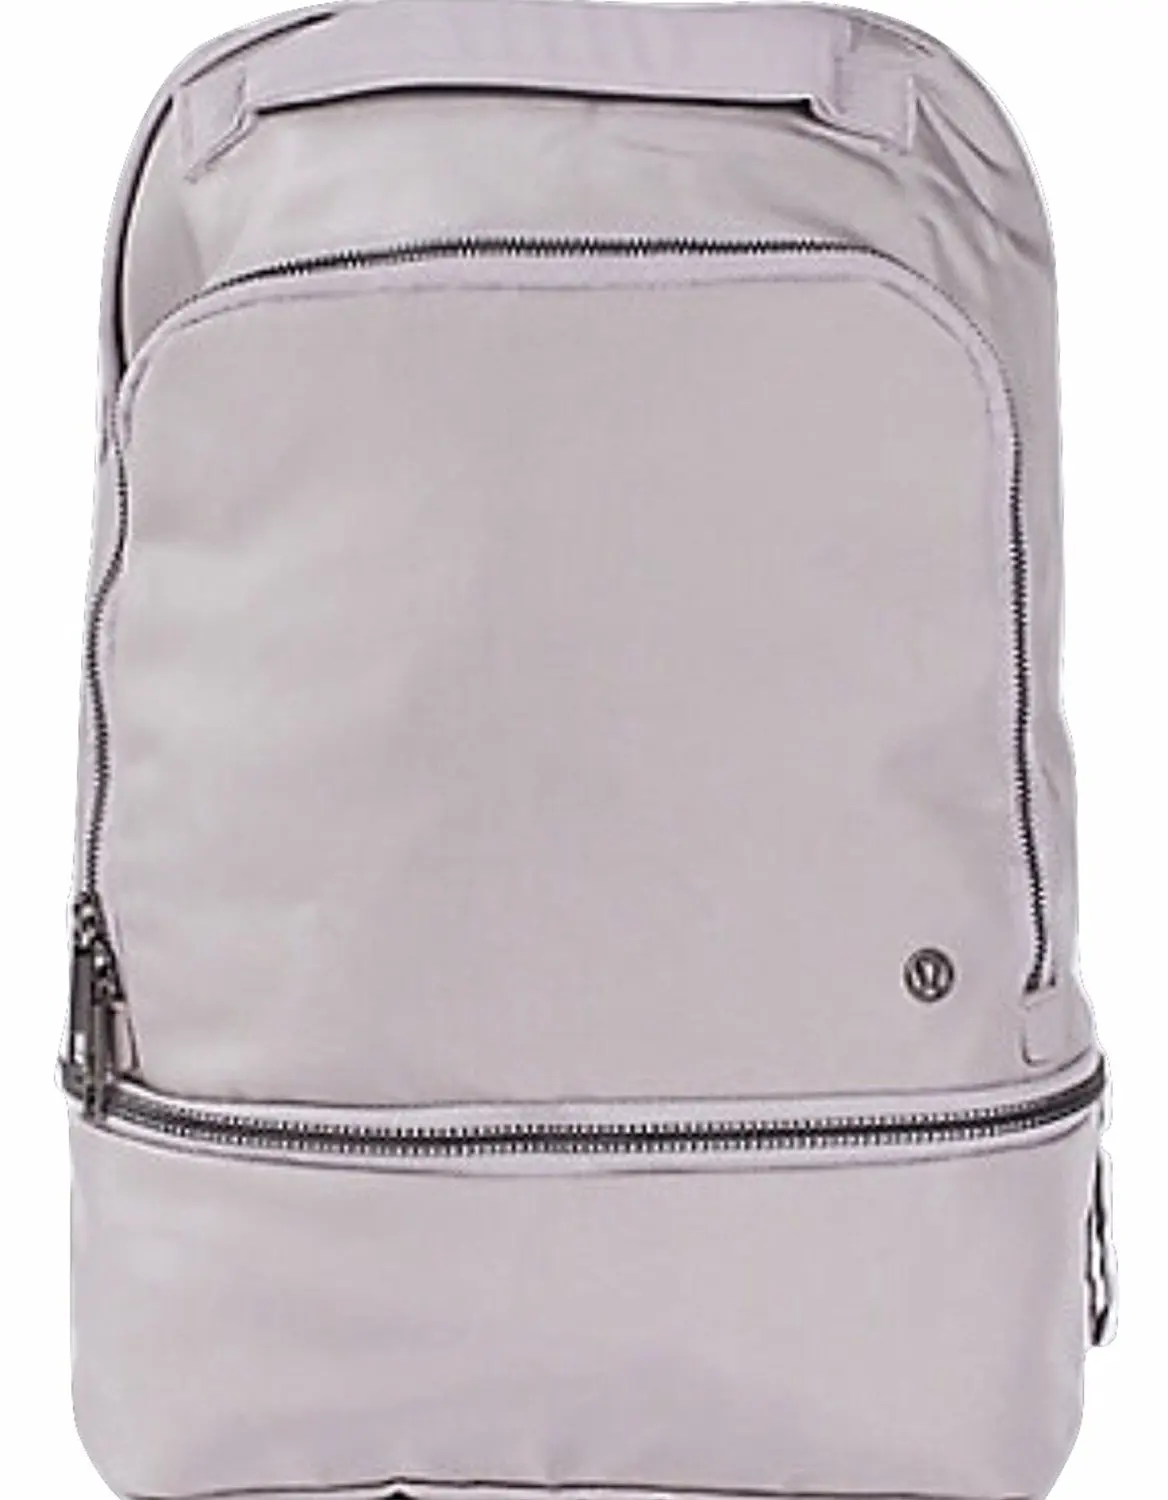 lululemon sale backpack